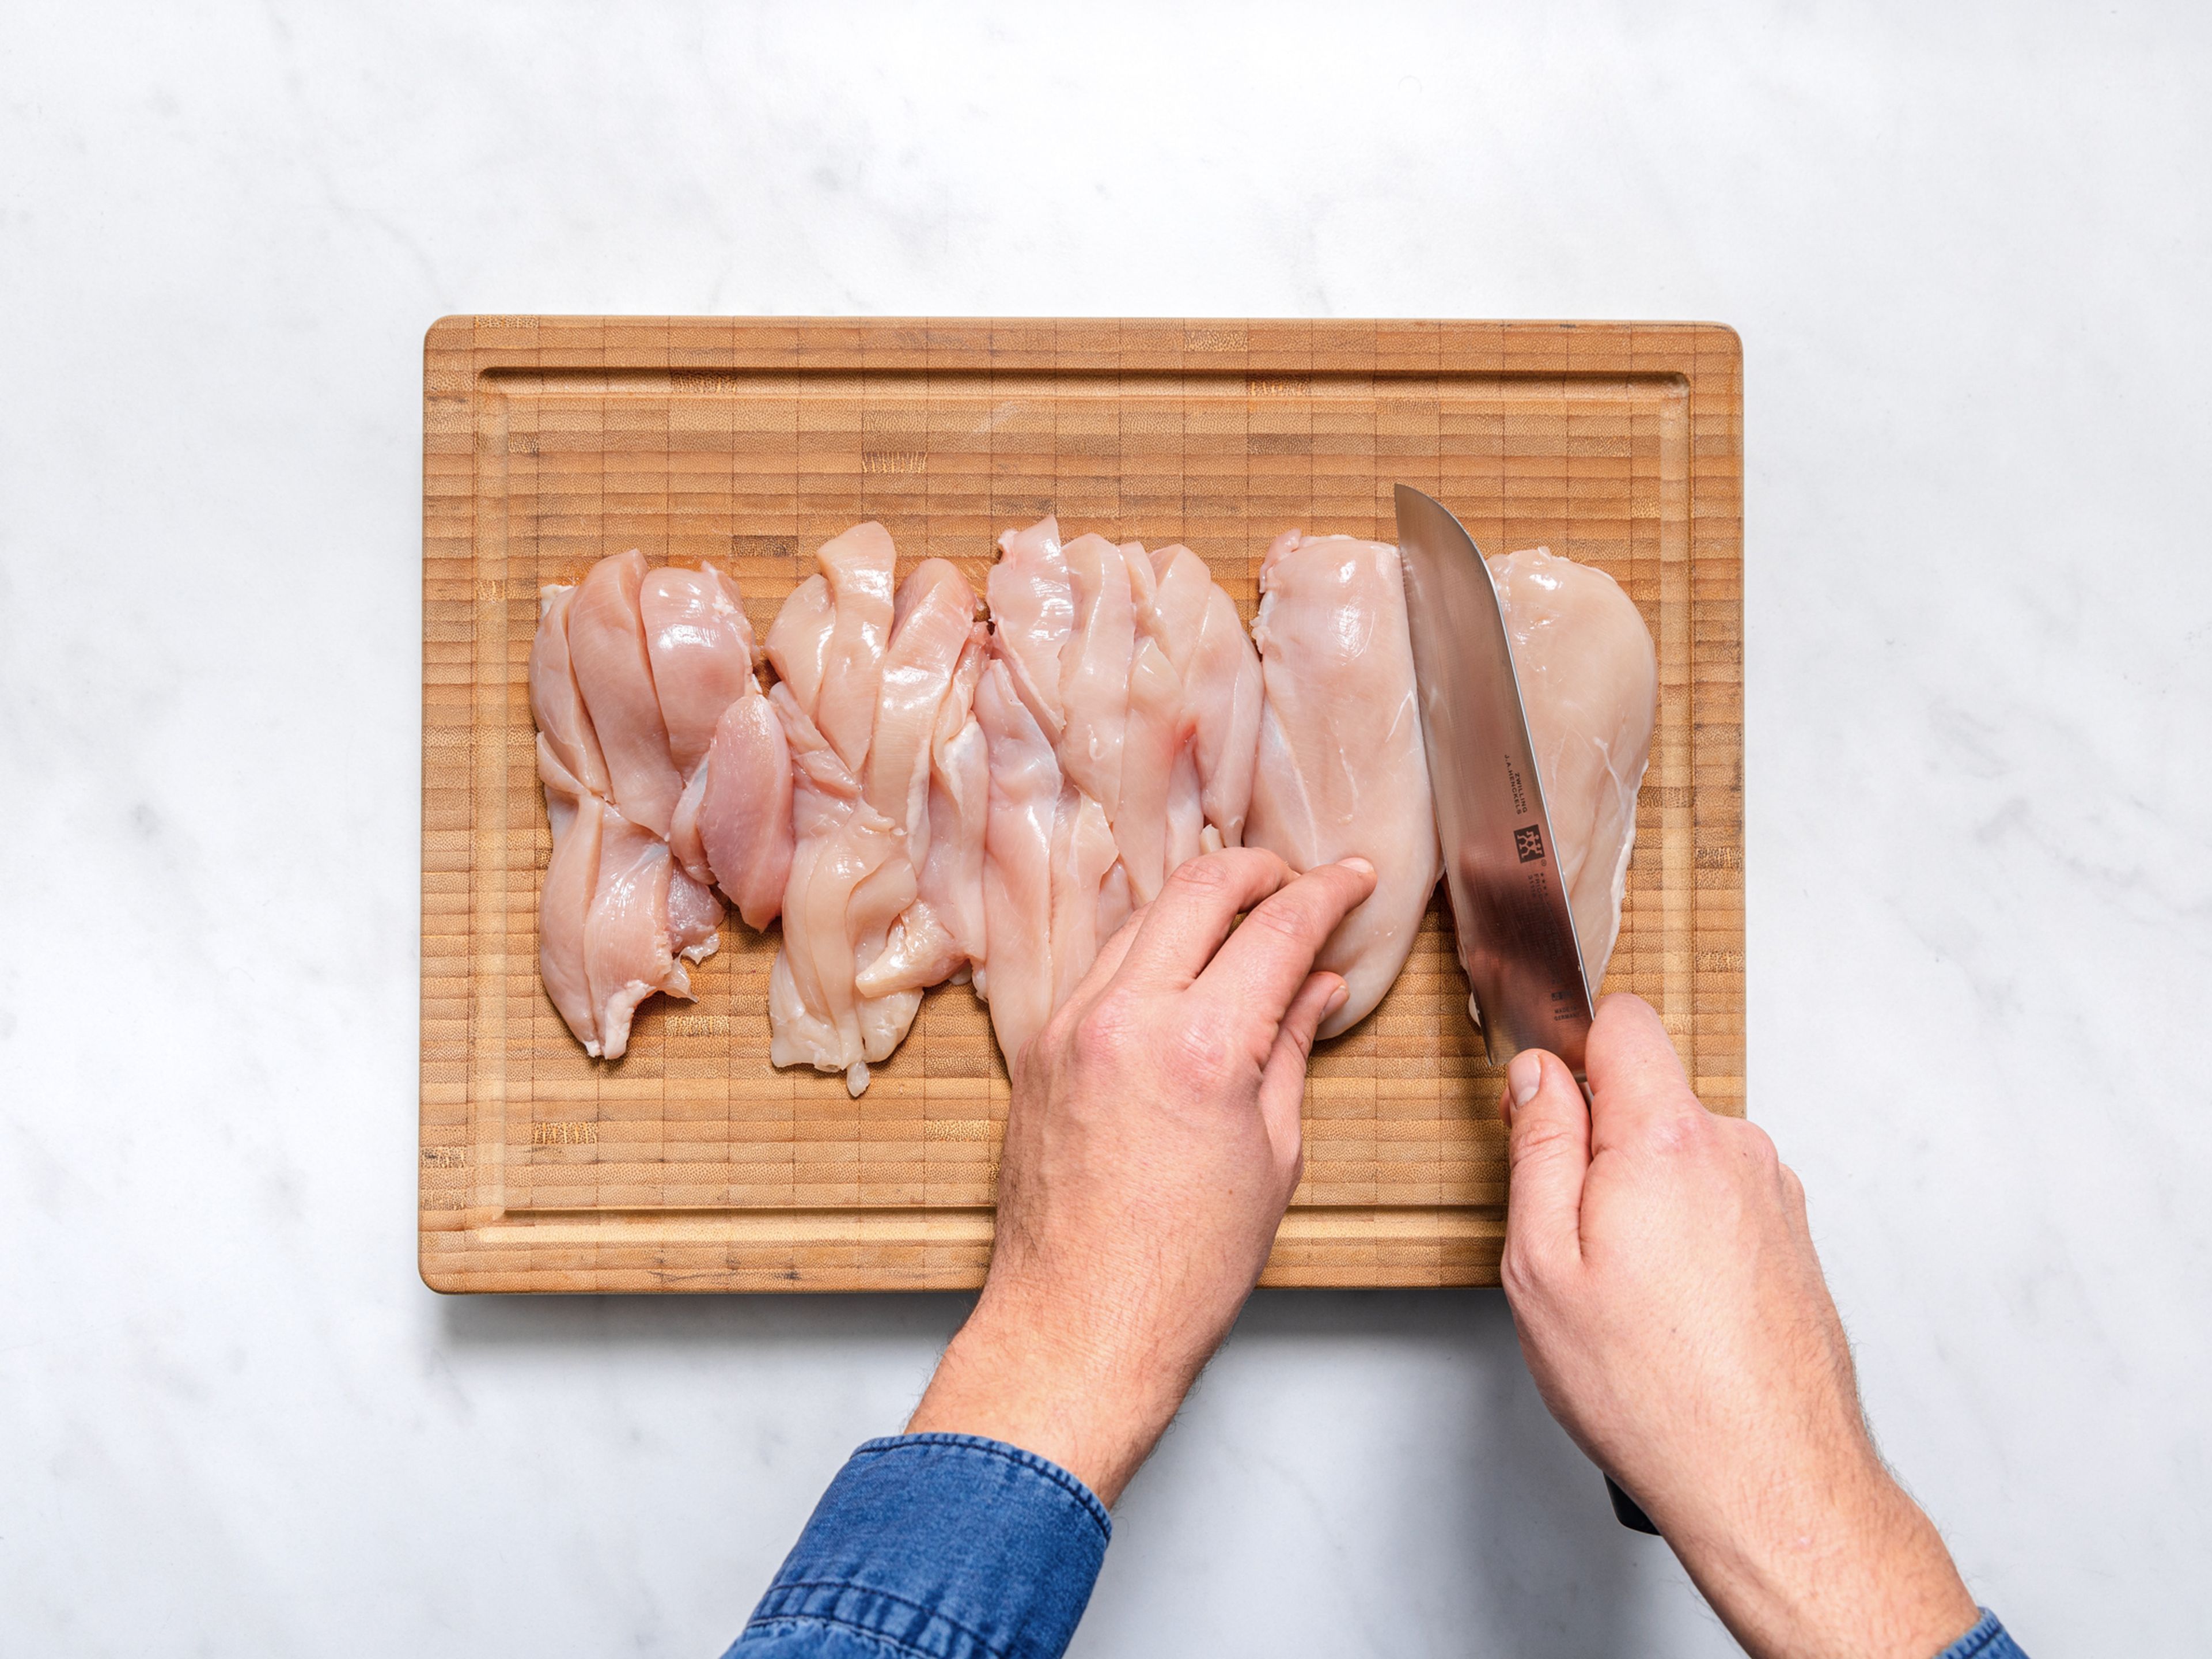 Den Ofen auf 200°C vorheizen. Die Hähnchenbrustfilets in Streifen schneiden. Das Panko Paniermehl gleichmäßig auf ein Backblech verteilen. Nun für ca. 3 – 5 Min. leicht goldbraun backen. Aus dem Ofen nehmen und vollständig abkühlen lassen.